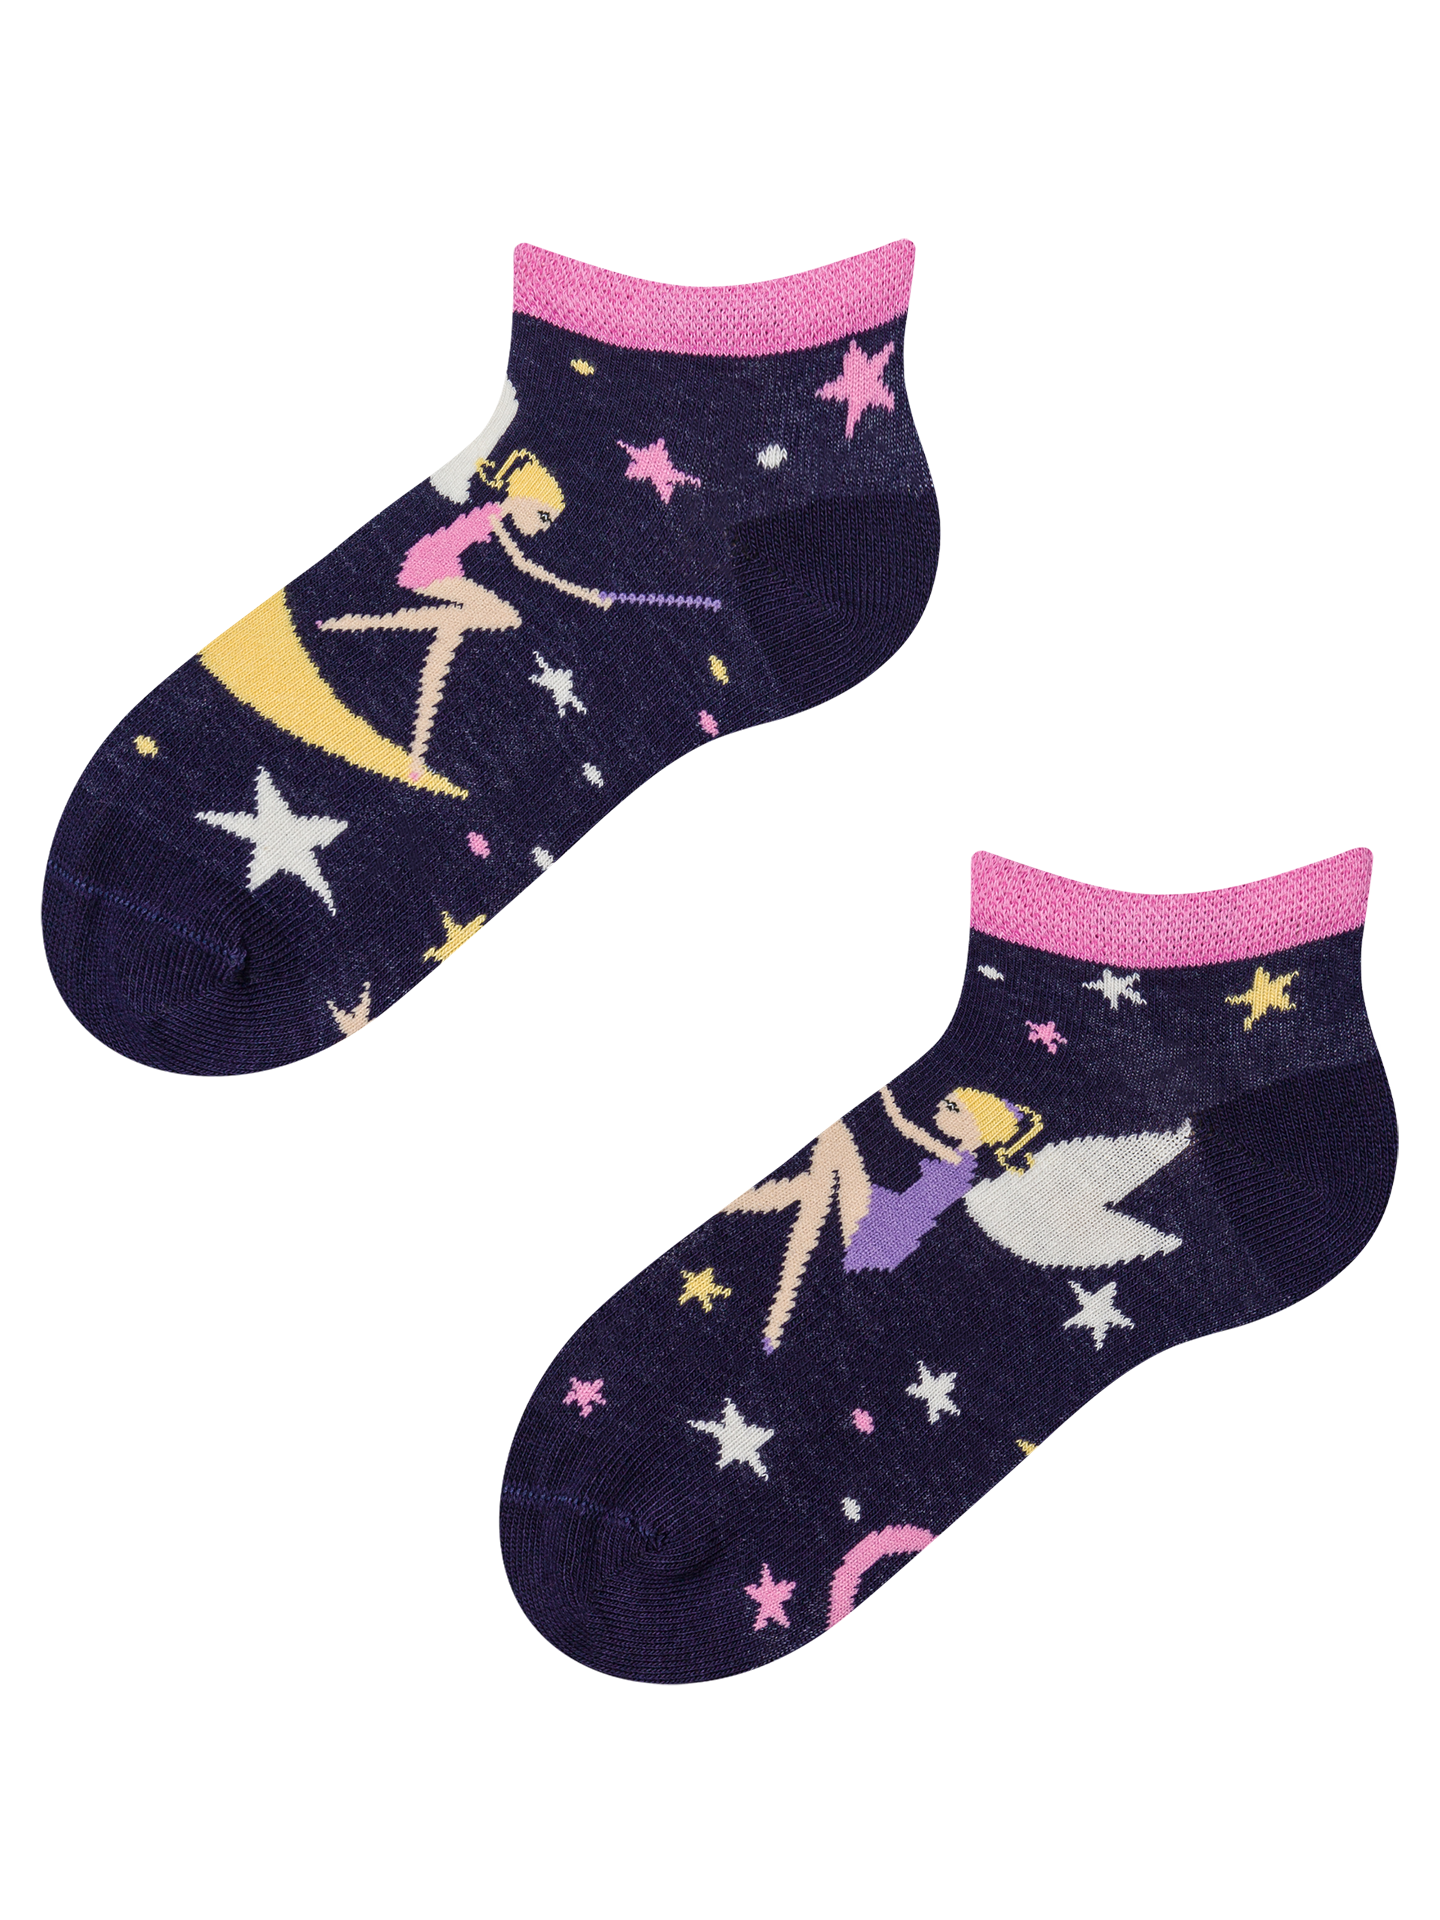 Kids' Ankle Socks Fairy